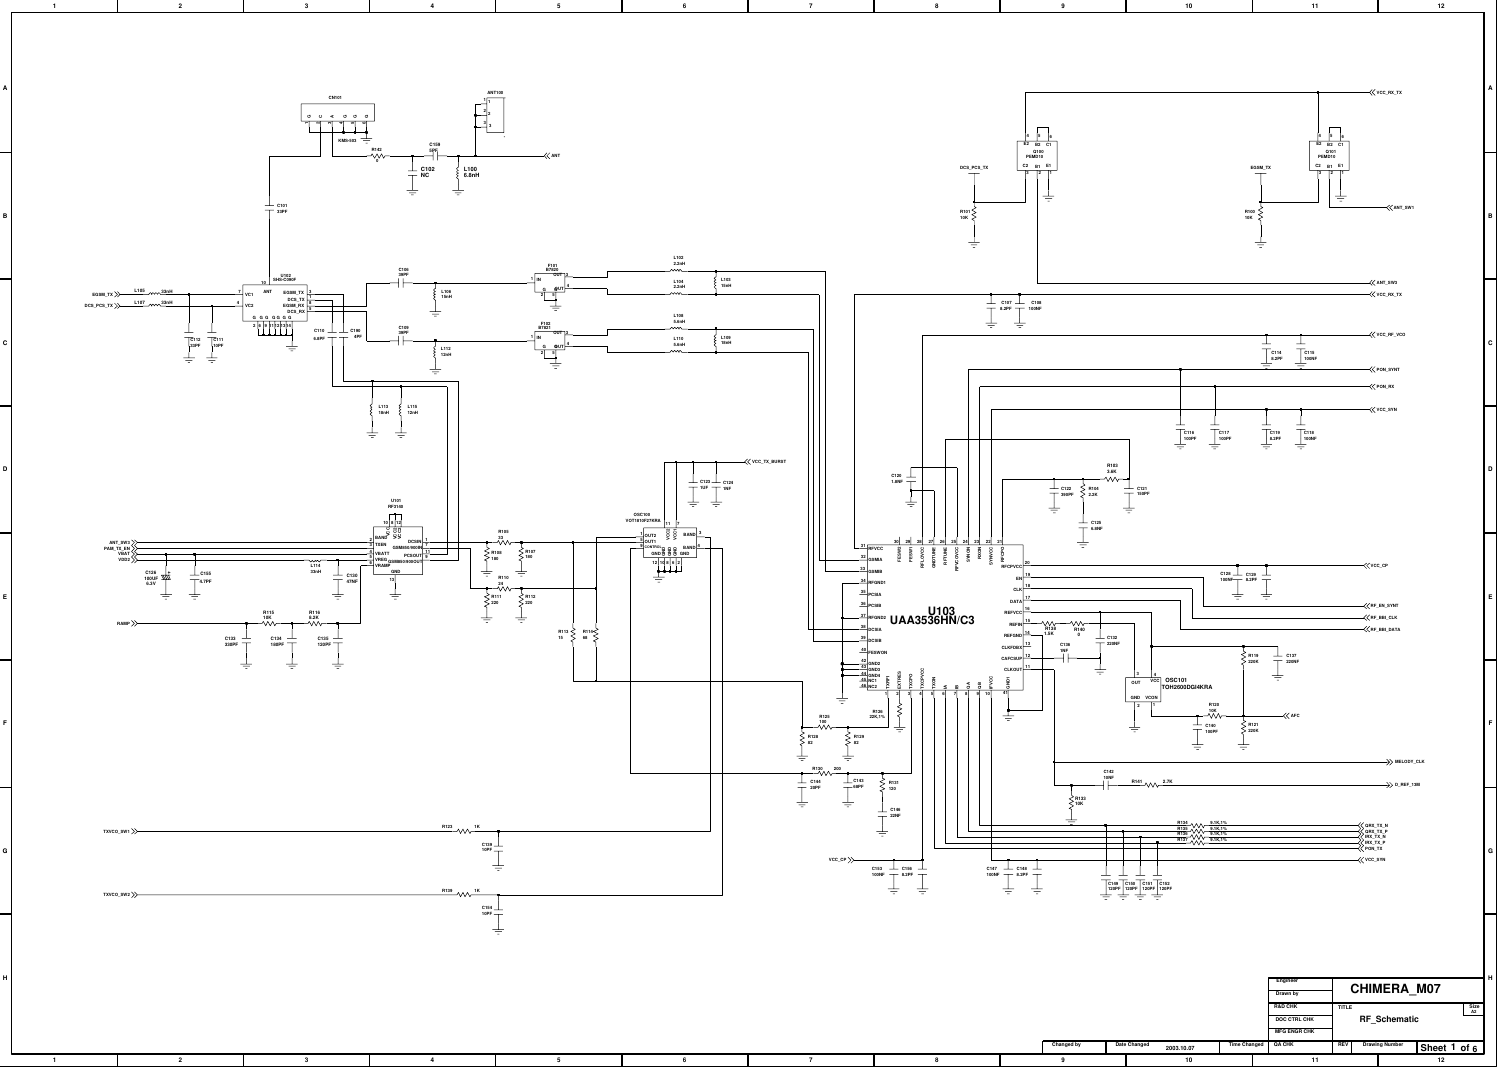 Page 3 of 9 - Samsung SGH-X600 - Schematics. Www.s-manuals.com. Schematics